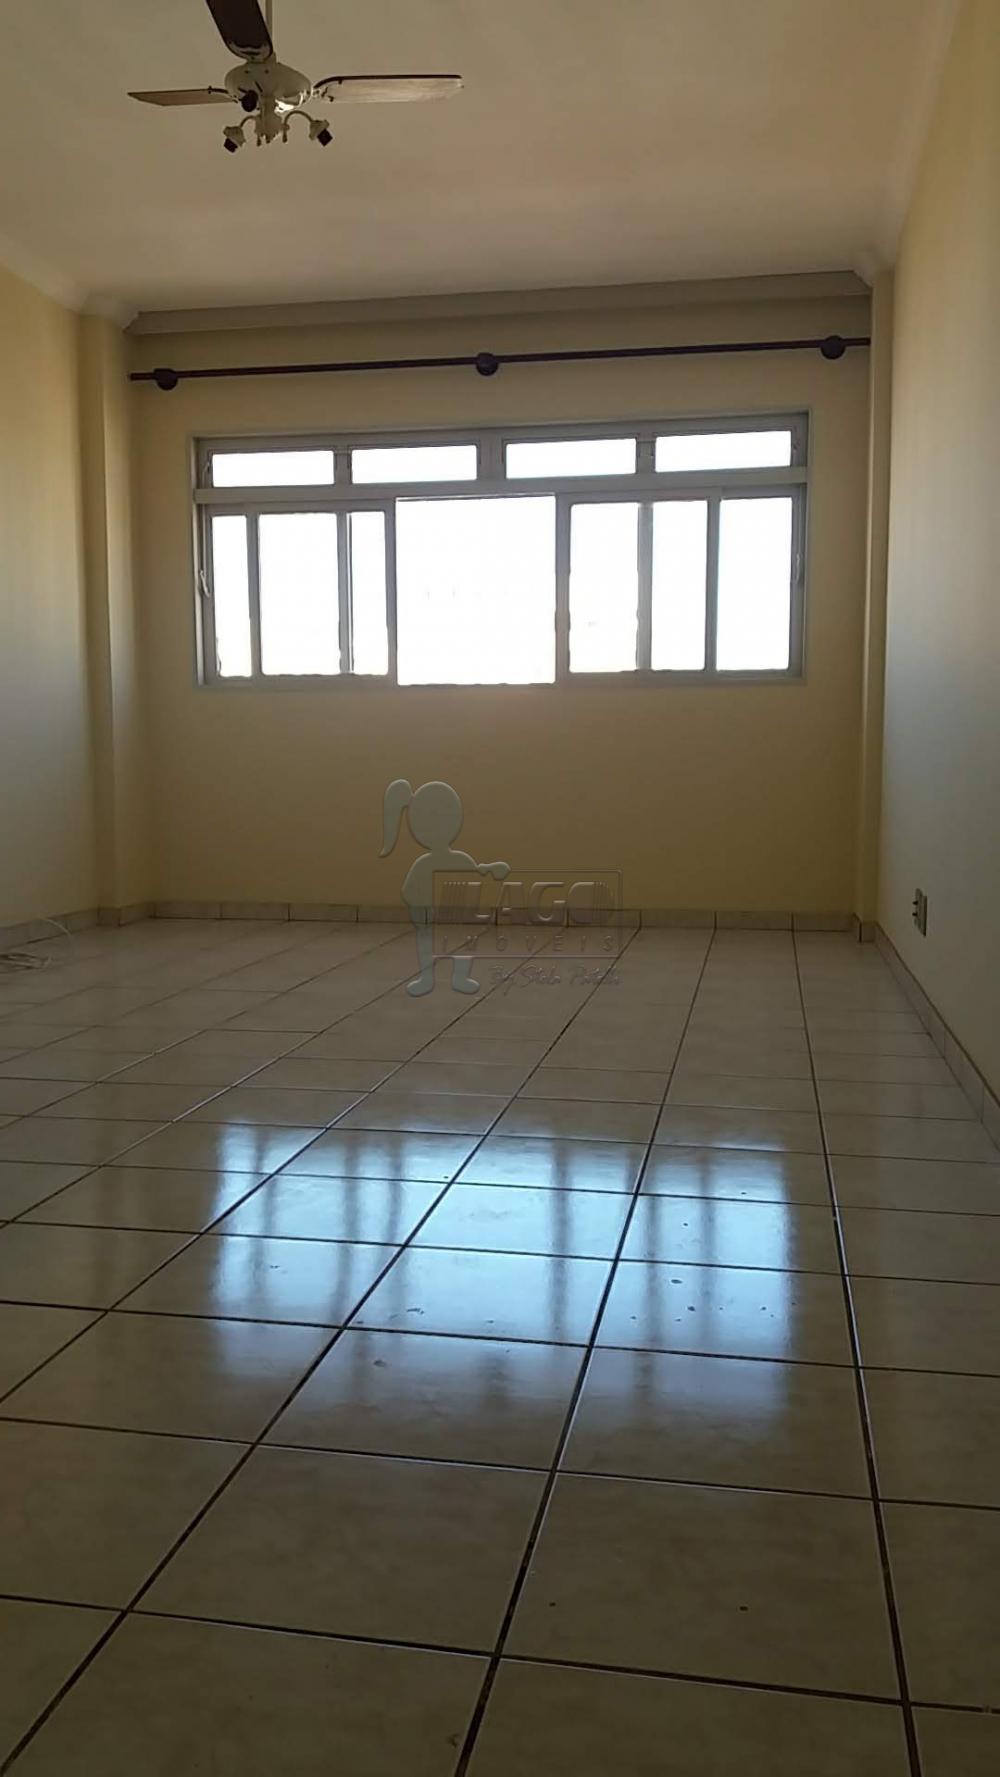 Comprar Apartamentos / Padrão em Ribeirão Preto R$ 275.000,00 - Foto 3